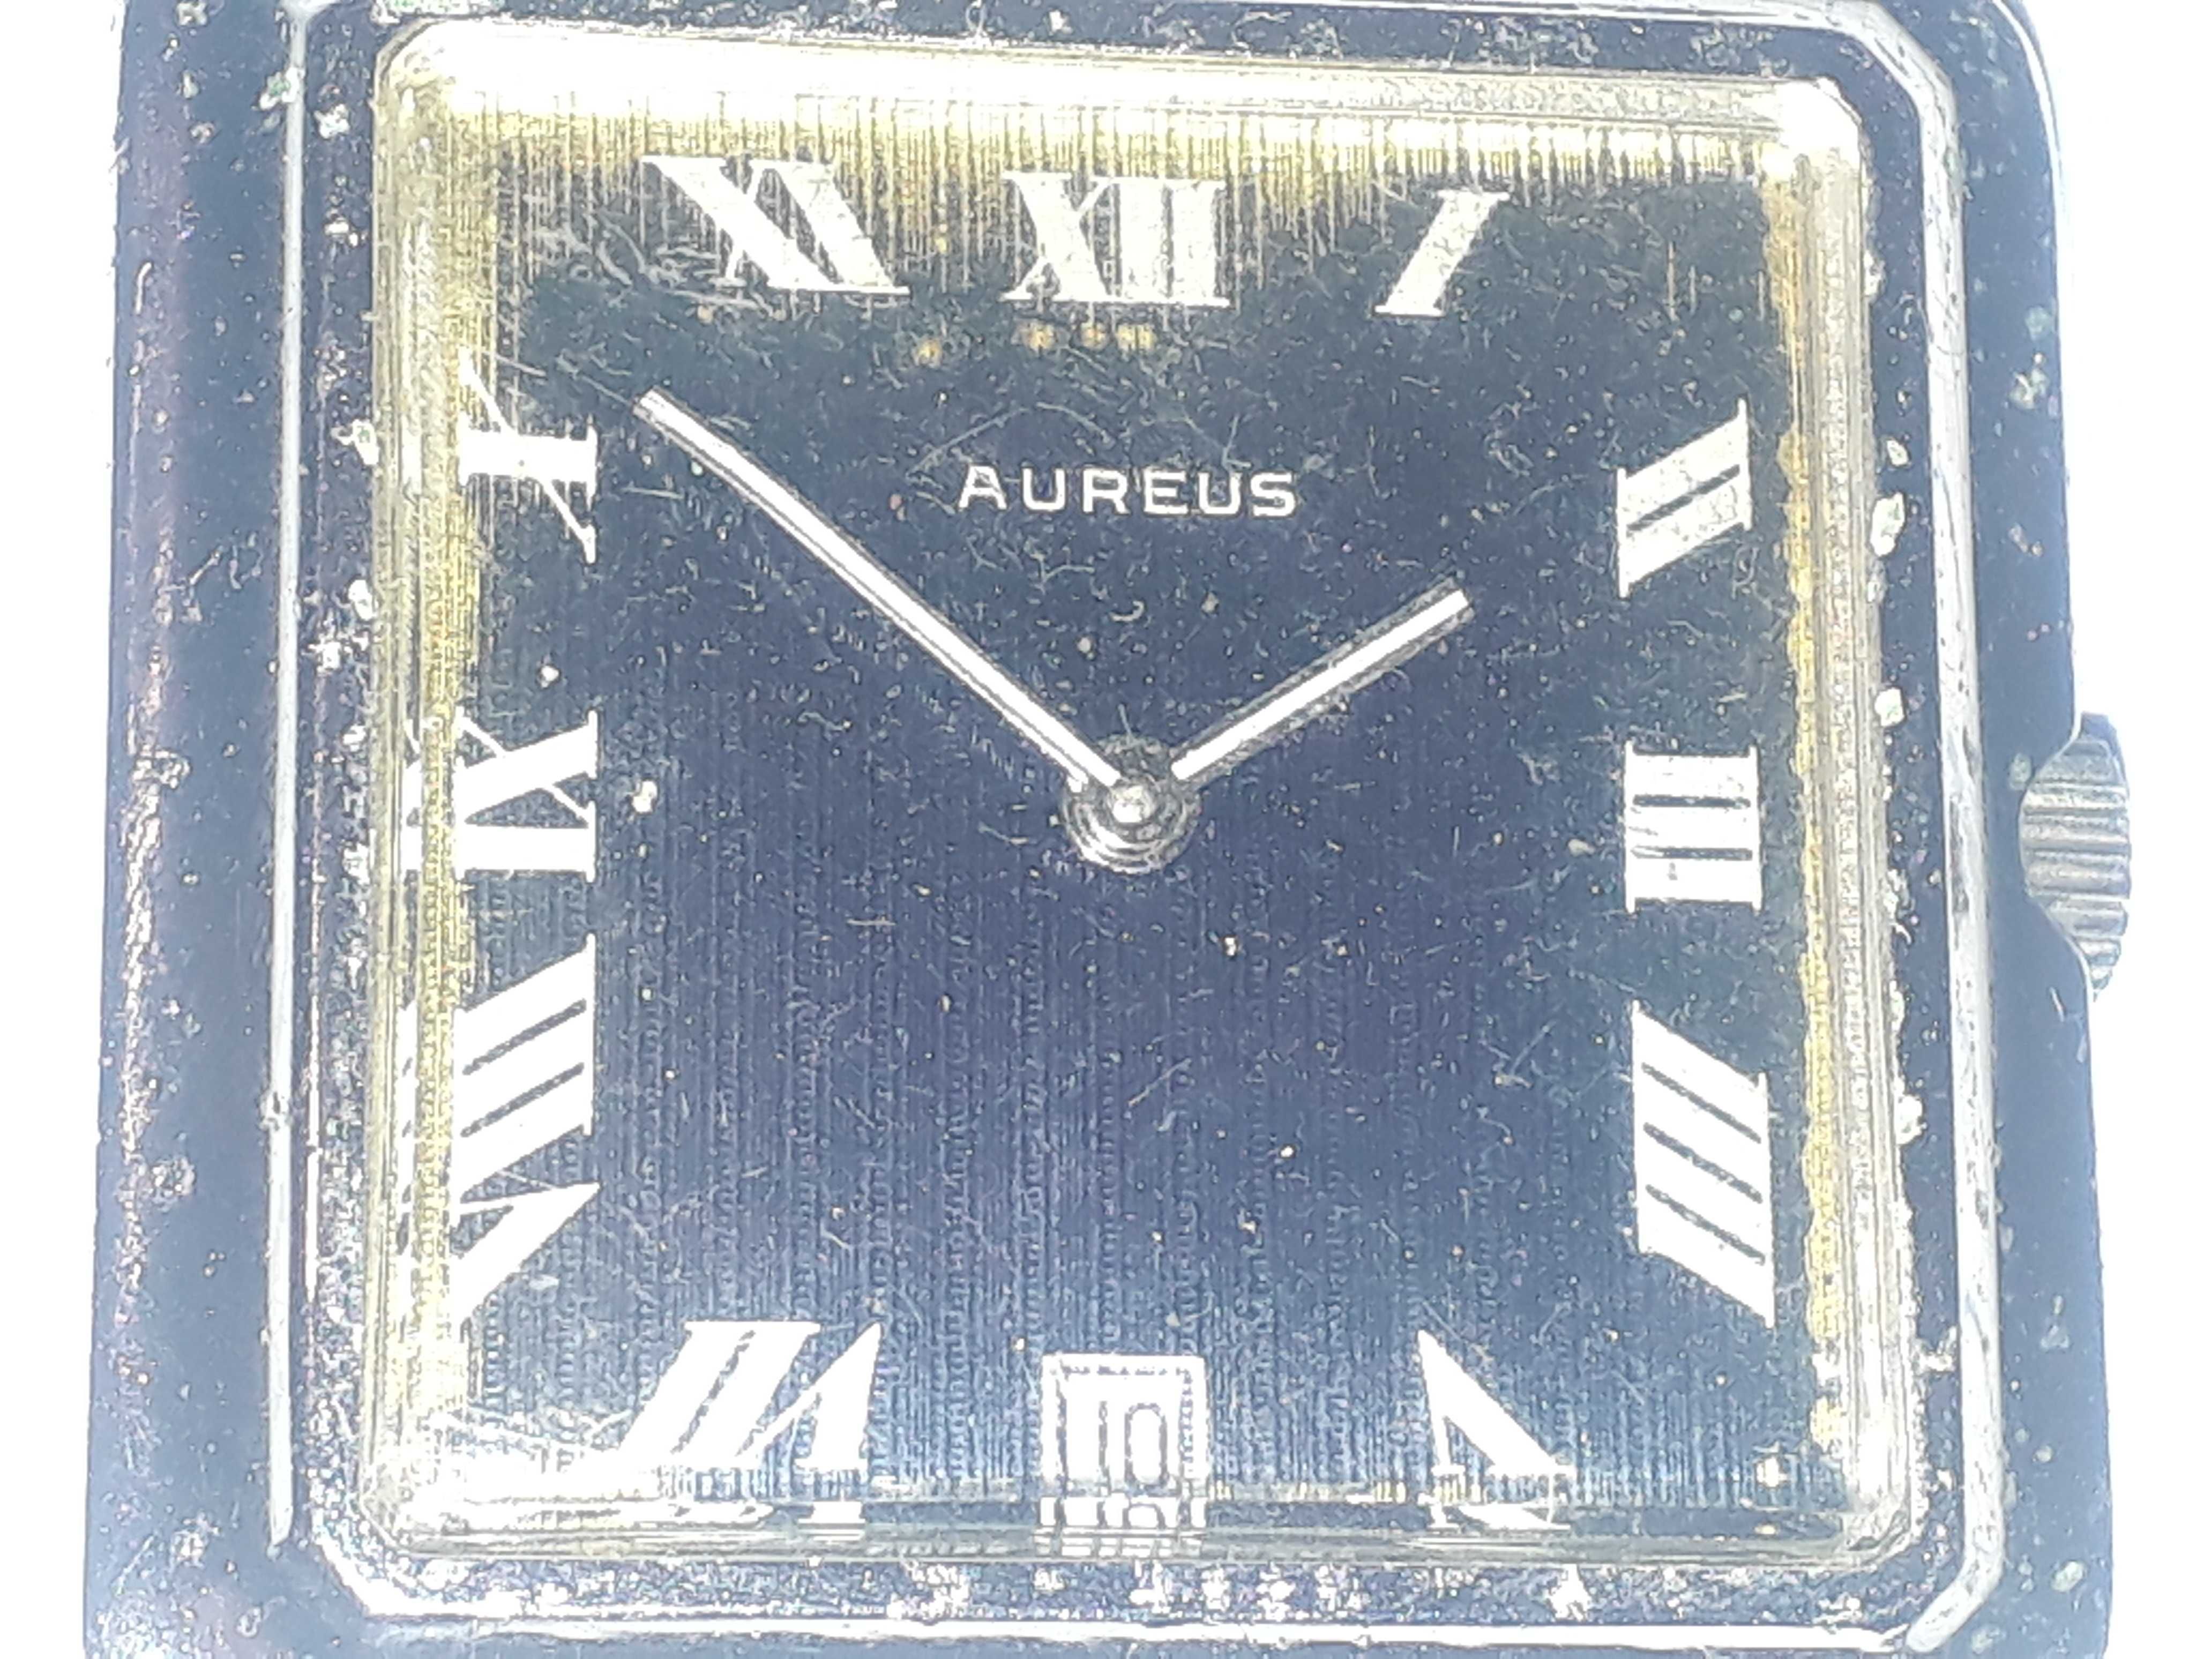 Часы швейцарские классические Edox  Aureus